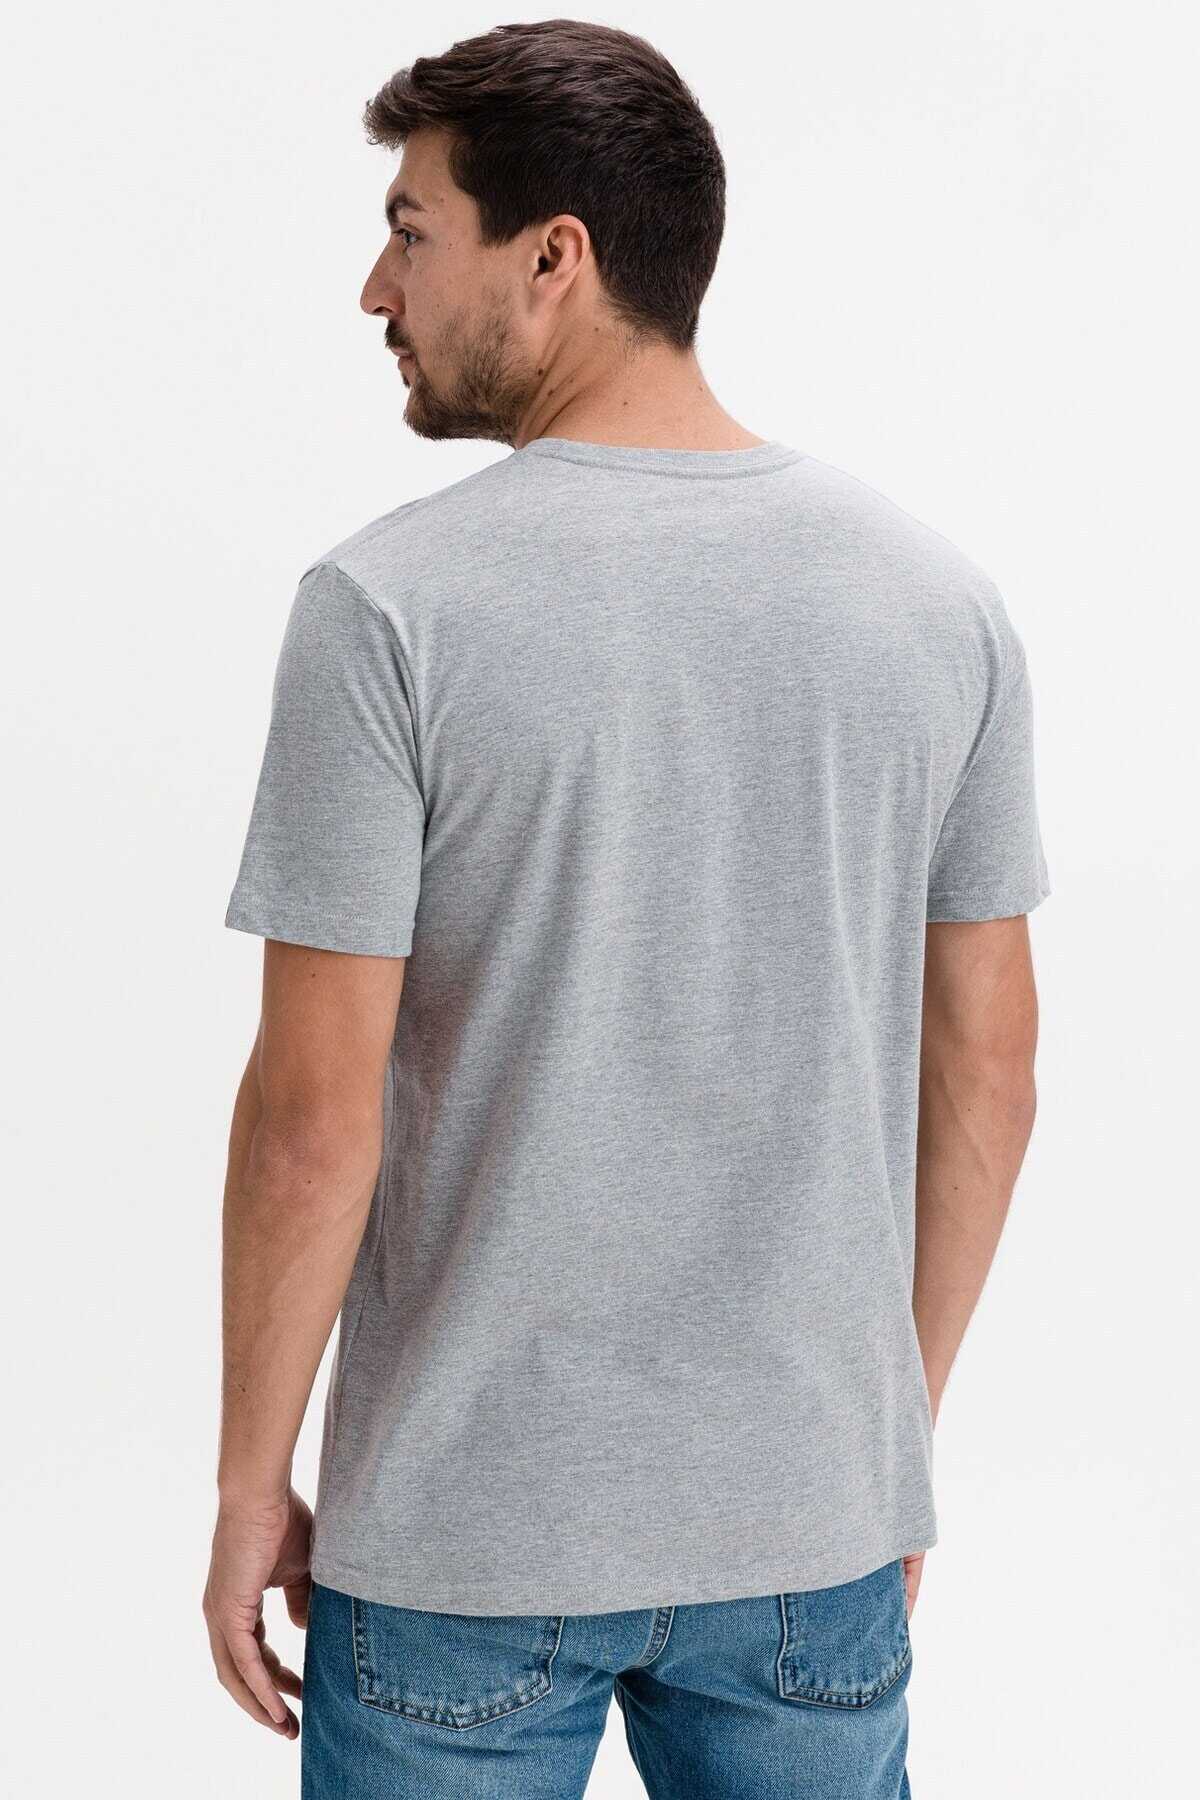 تیشرت یقه گرد چاپ دار مردانه خاکستری برند Quiksilver 